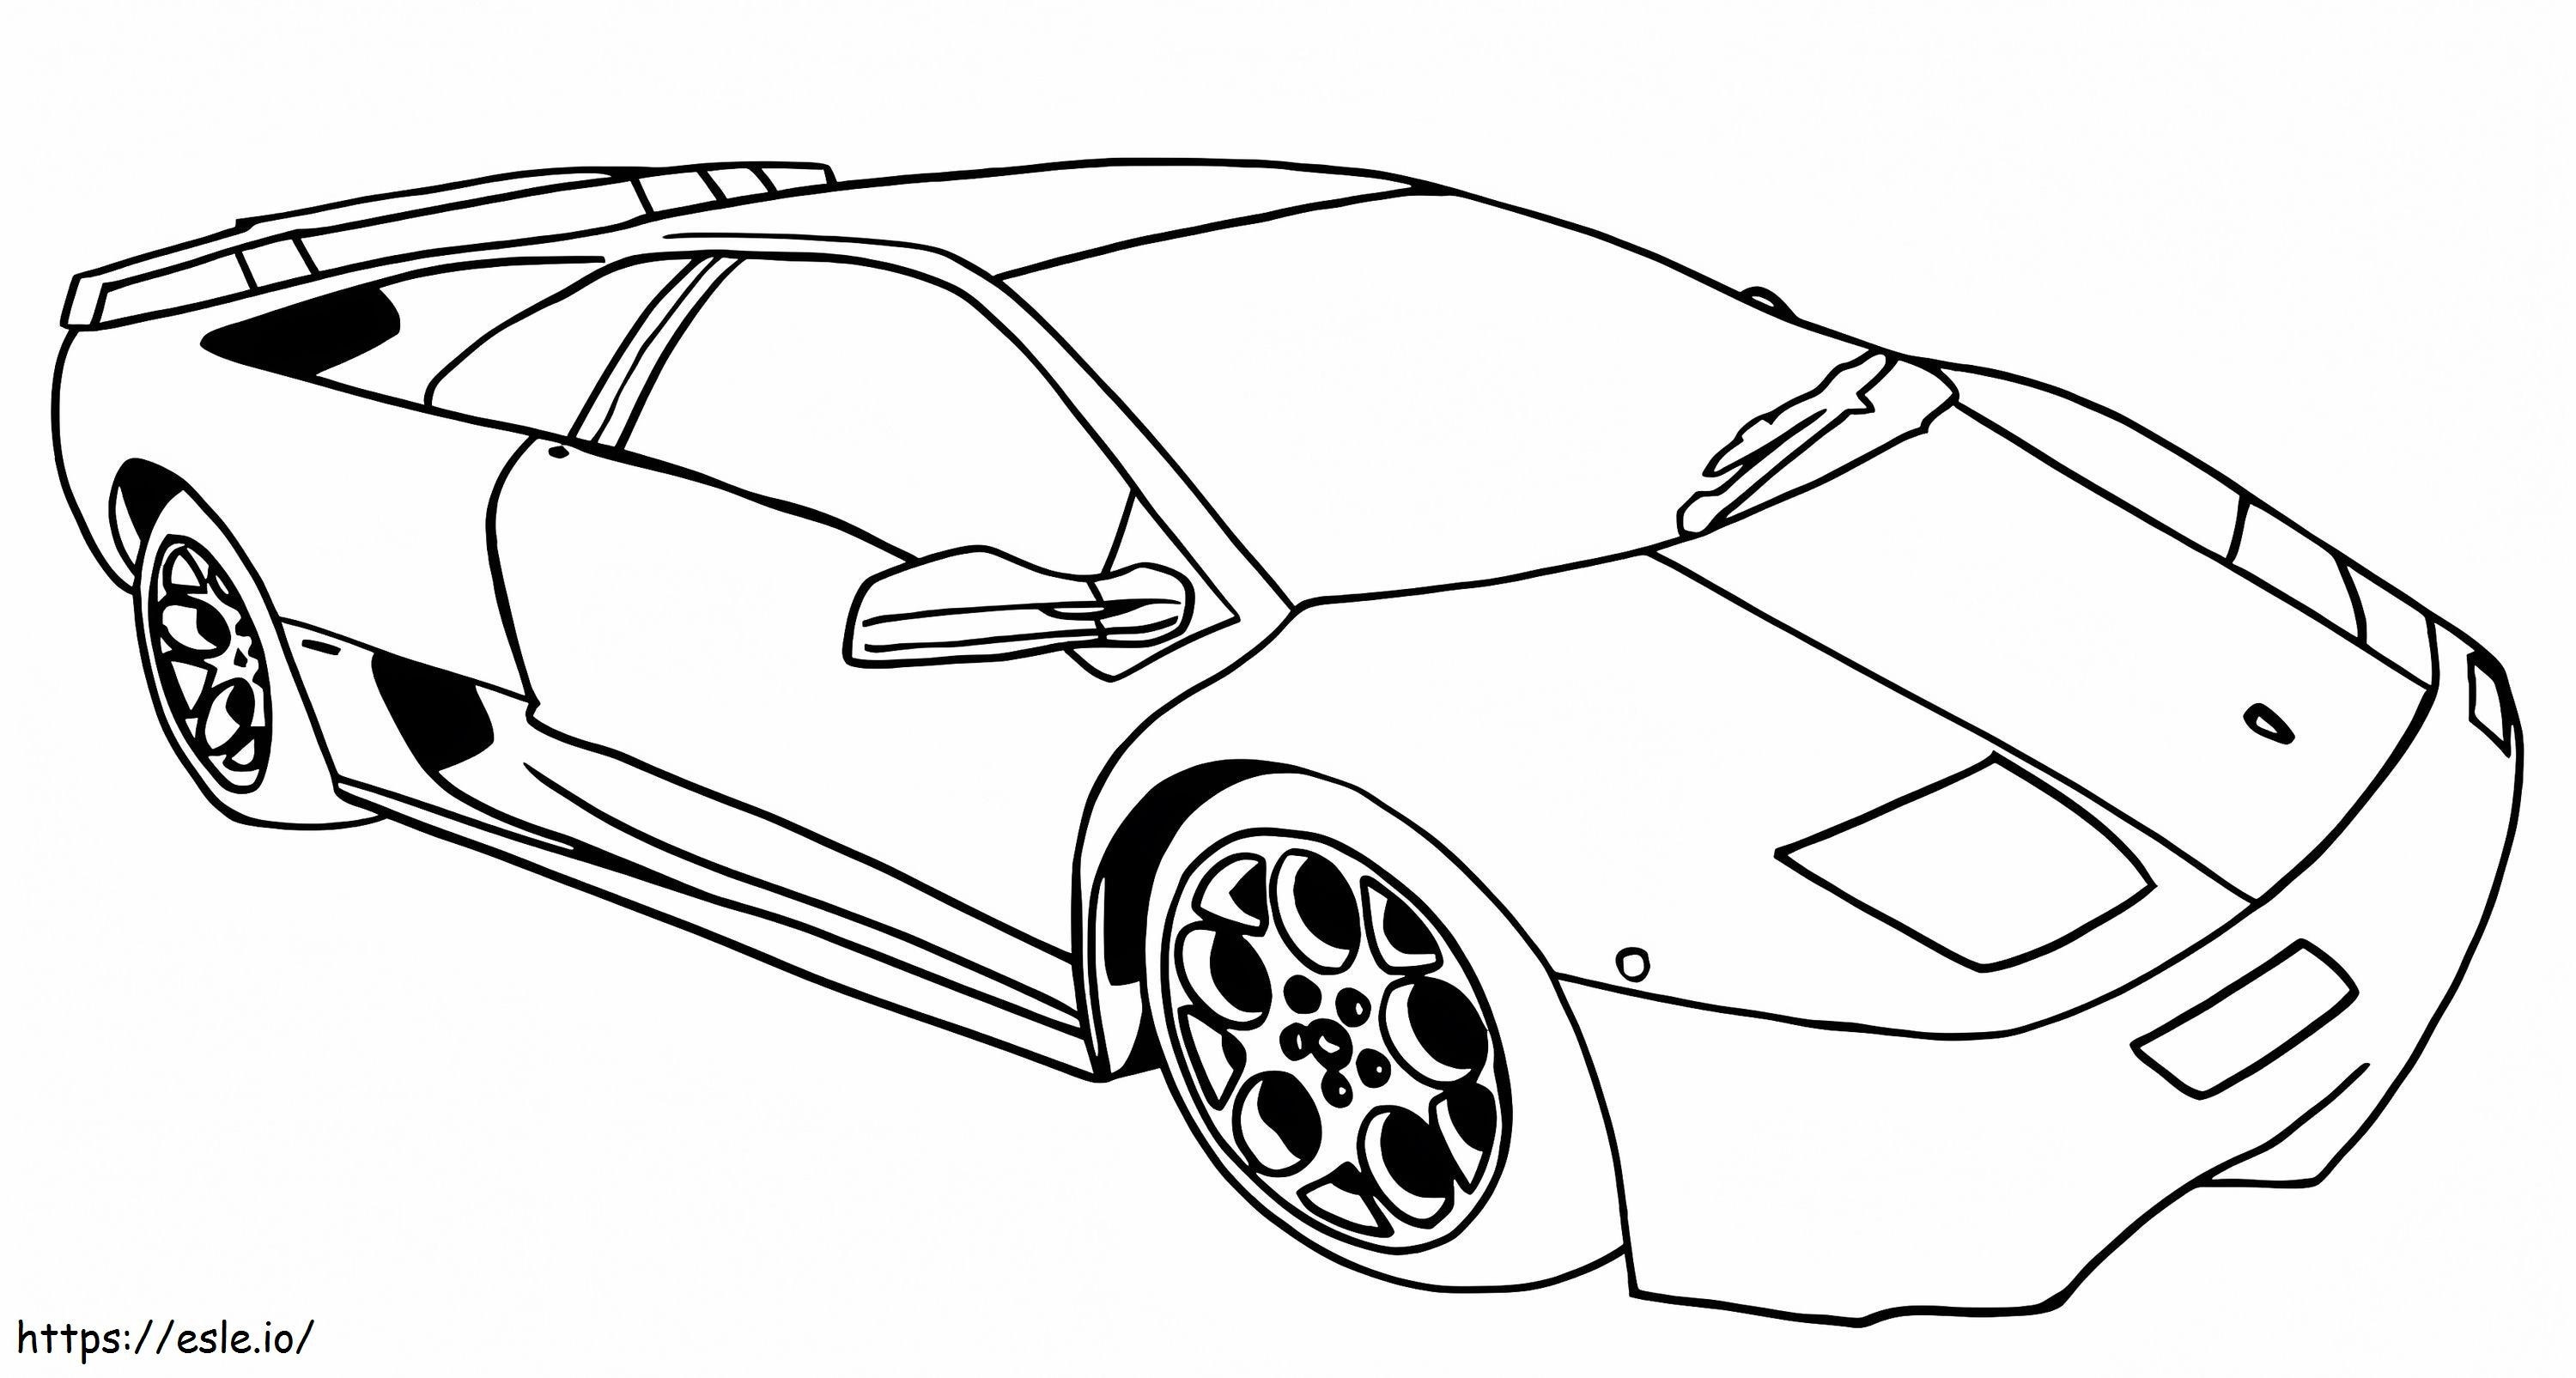 Lamborghini Diablo A4 coloring page